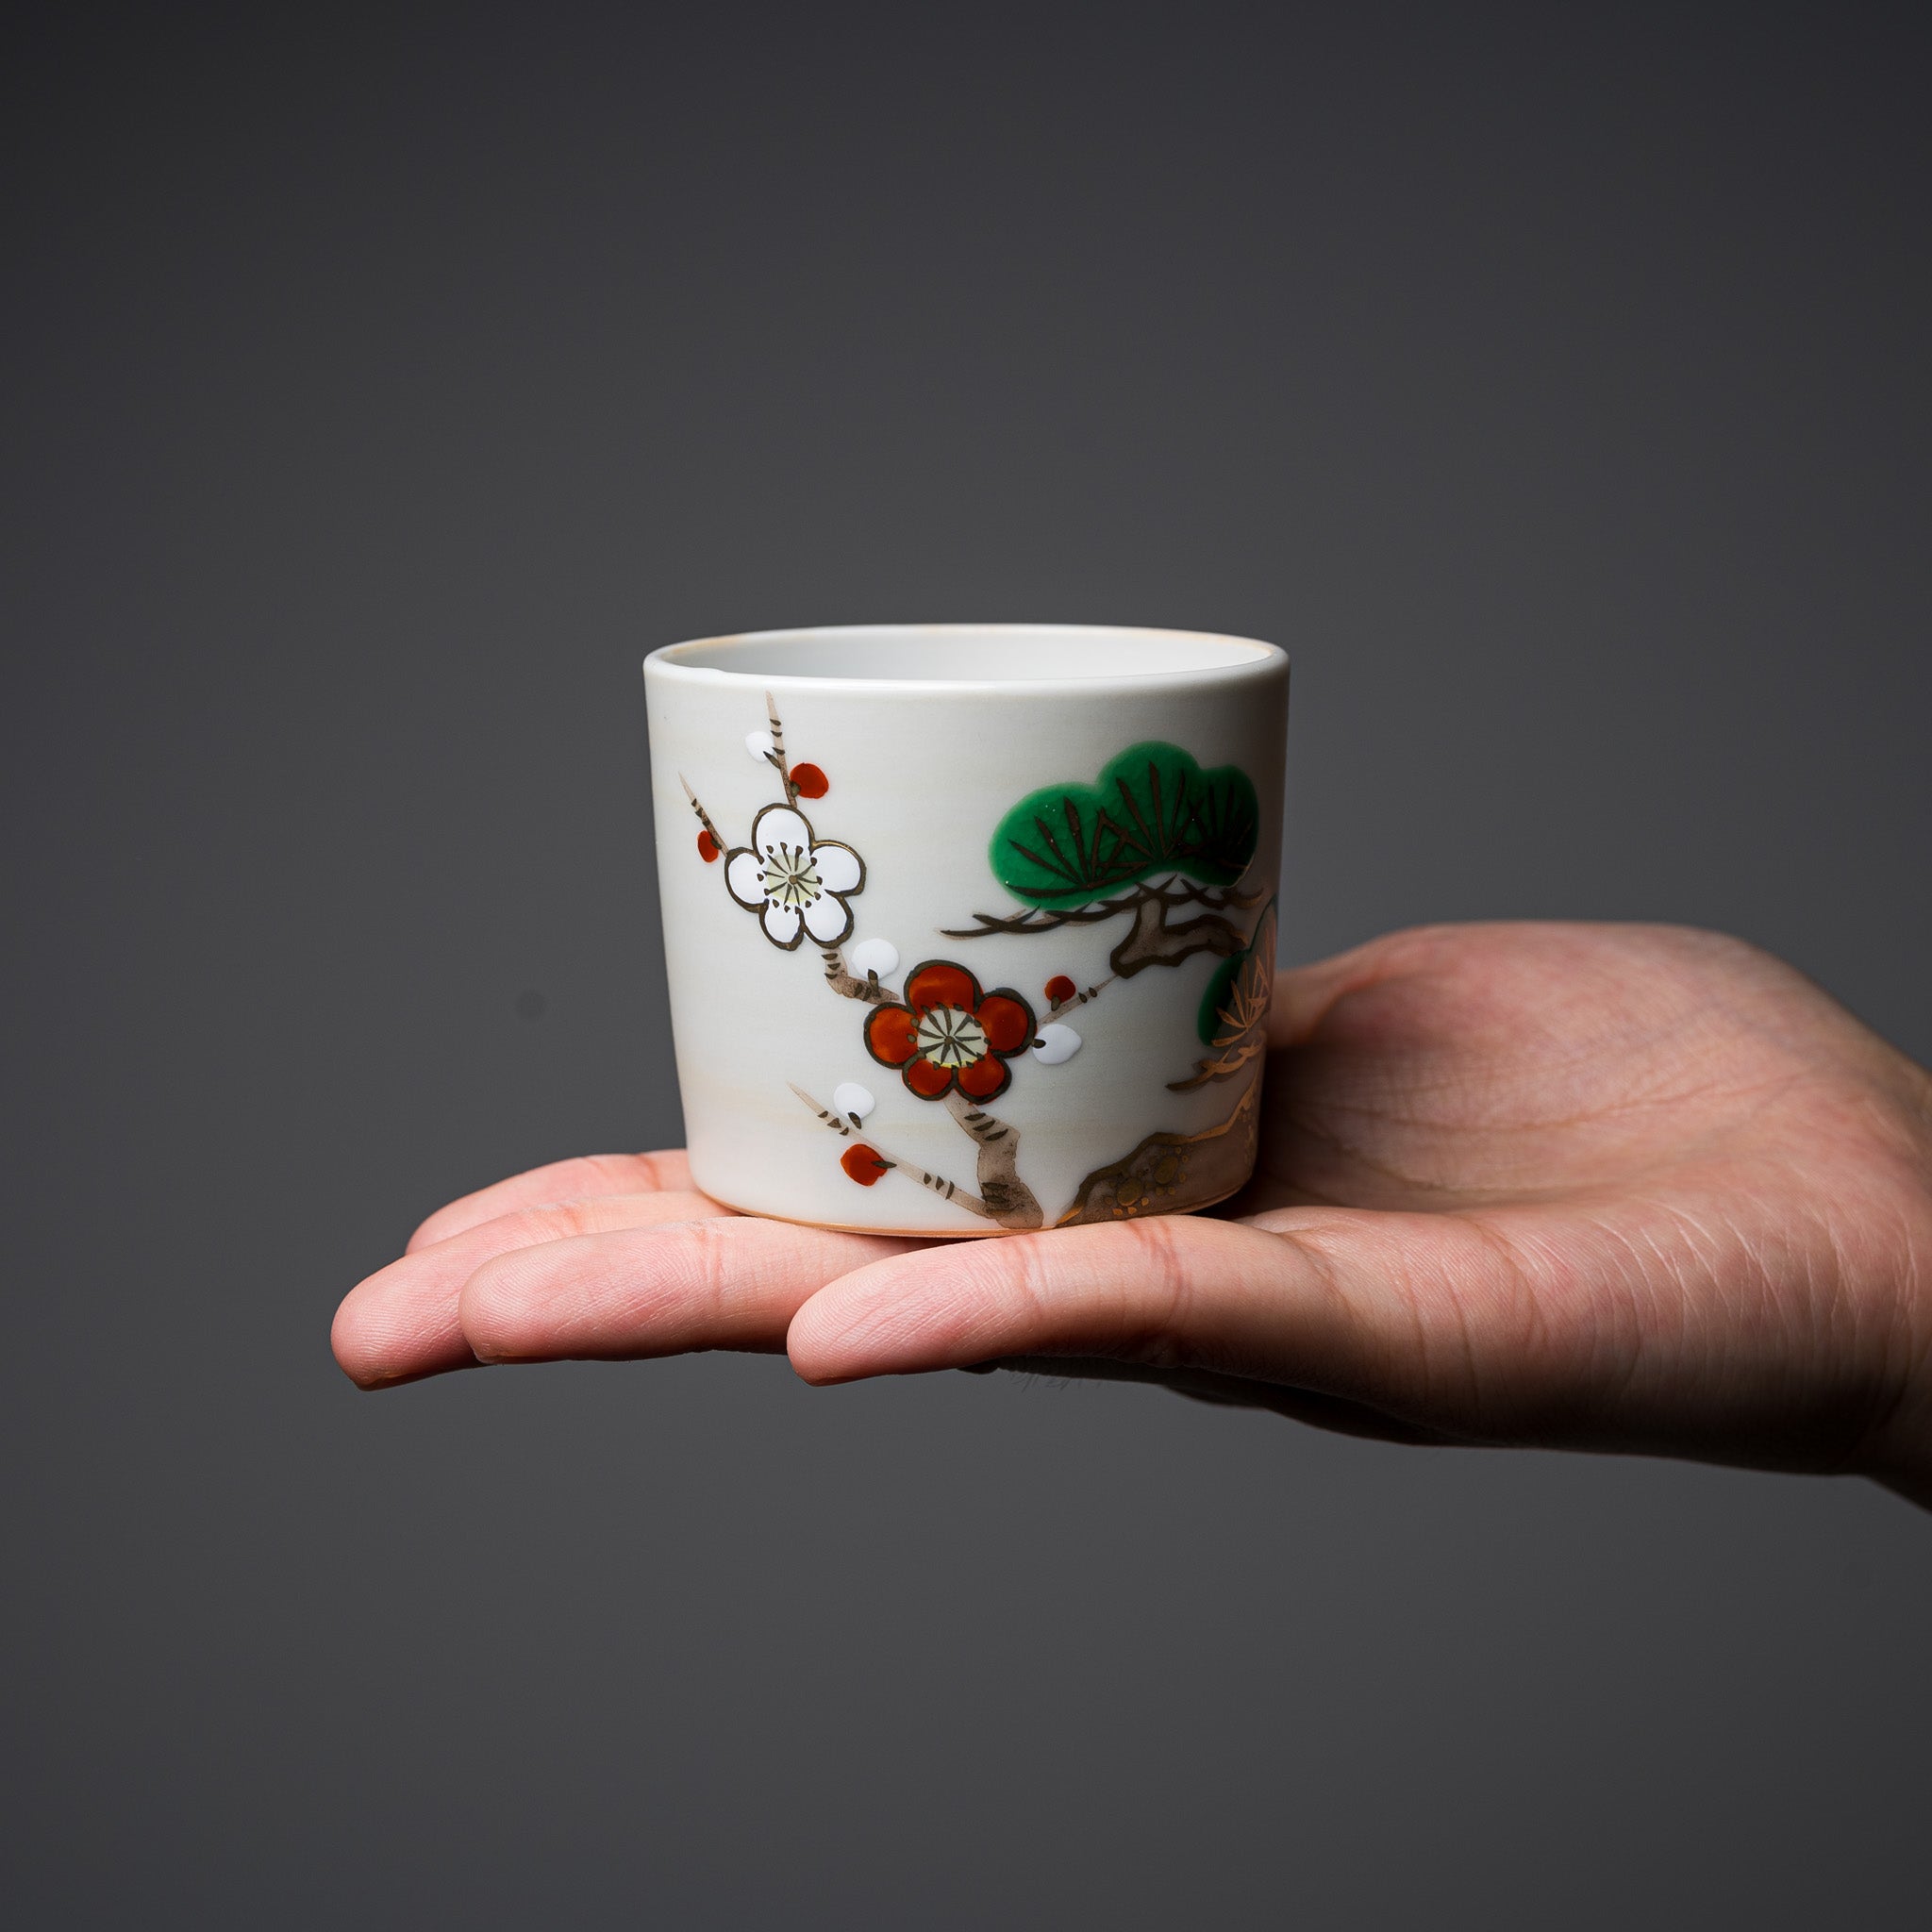 Kyo Kiyomizu Ware Hand made Sake Cup - Kinsai Shochikubai  / 京焼・清水焼き